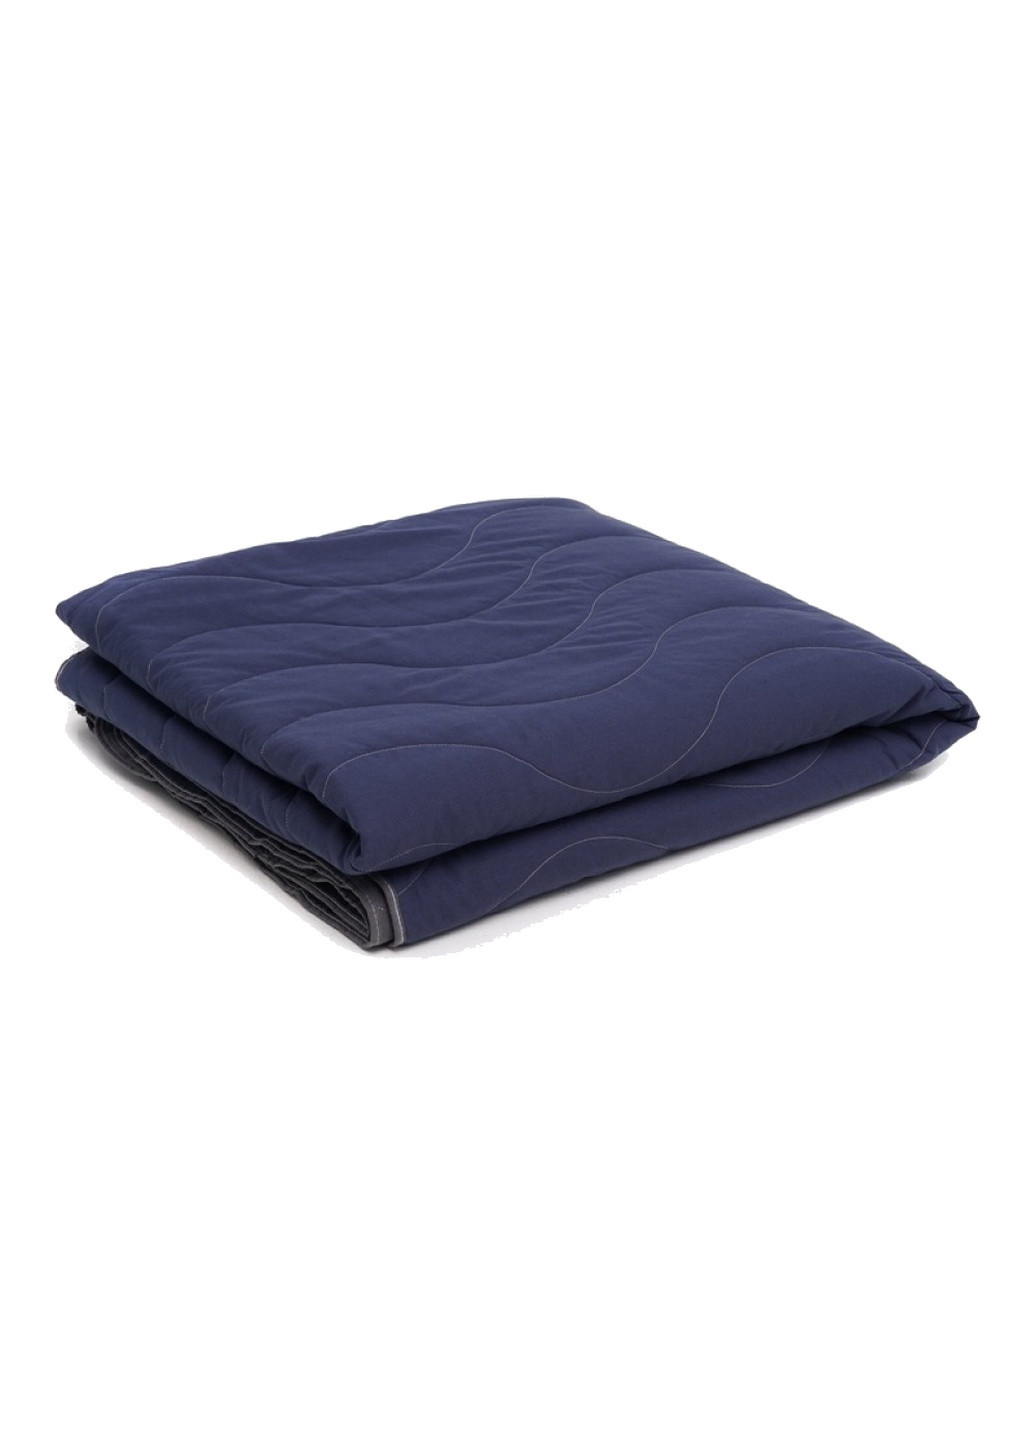 Набор хлопковый Silensa одеяло простынь наволочки синий двуспальный SoundSleep (259591981)